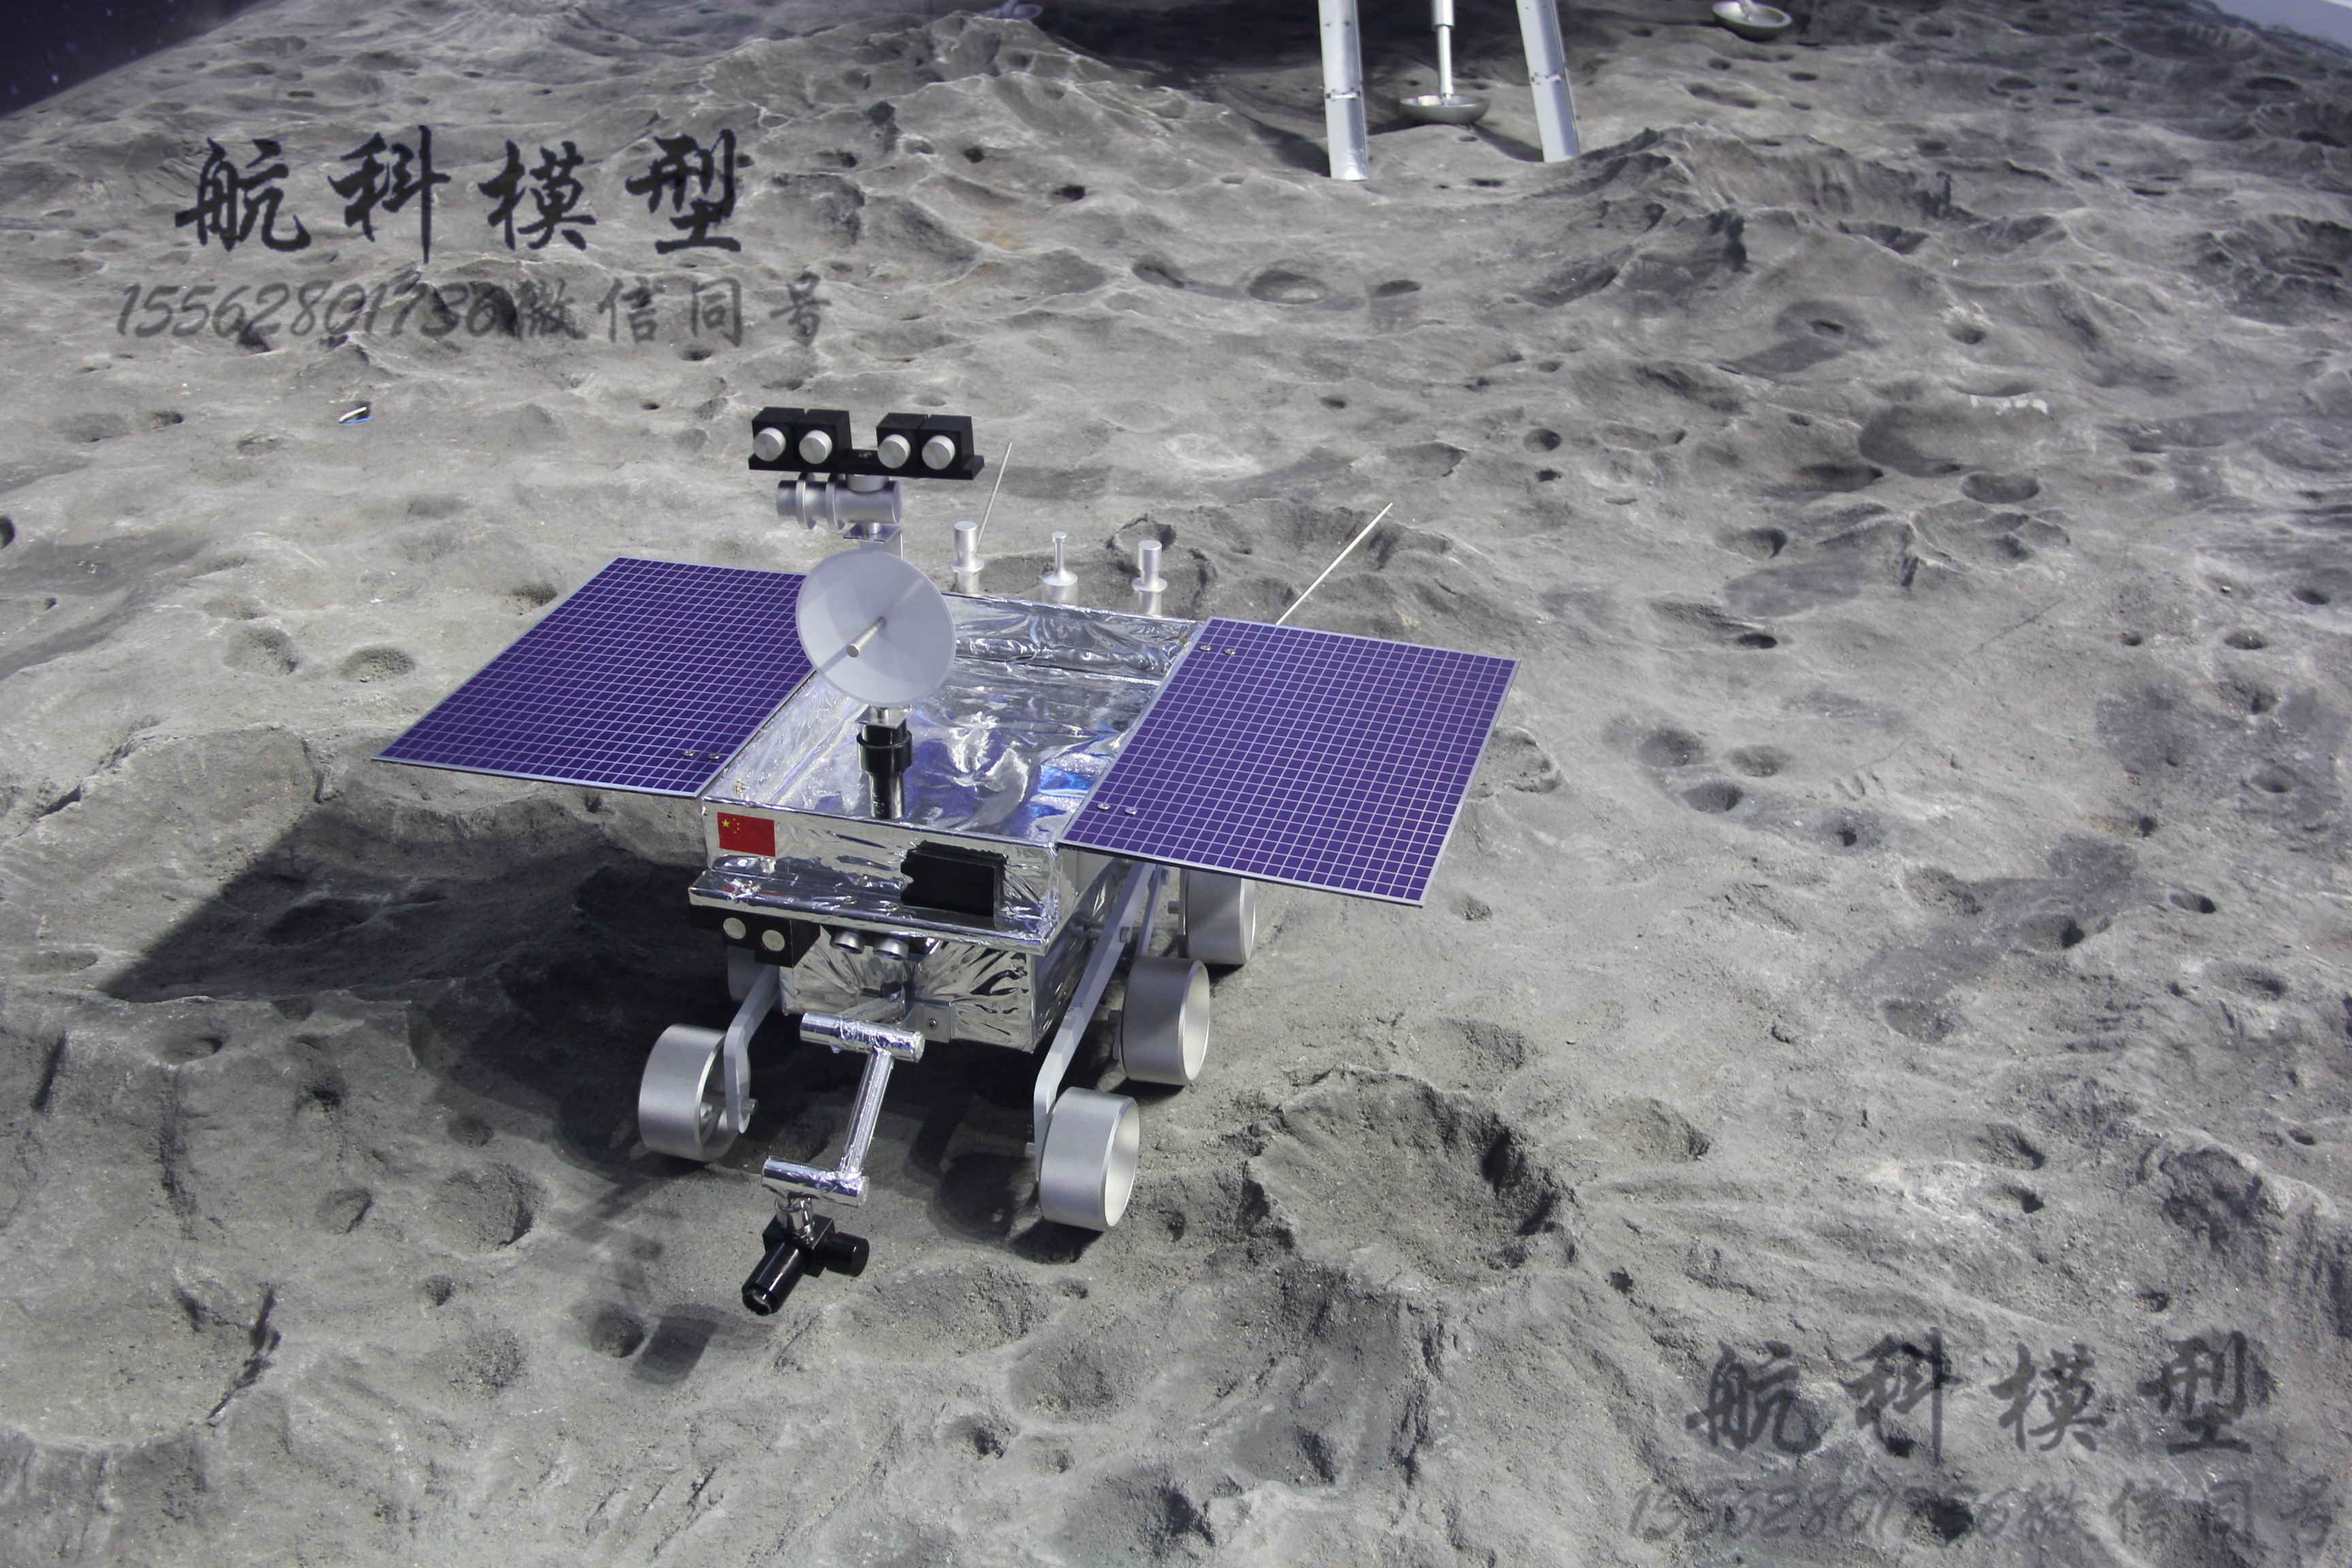 鹊桥卫星模型嫦娥四号探月模型玉兔二号模型嫦娥四号模型中国探月计划